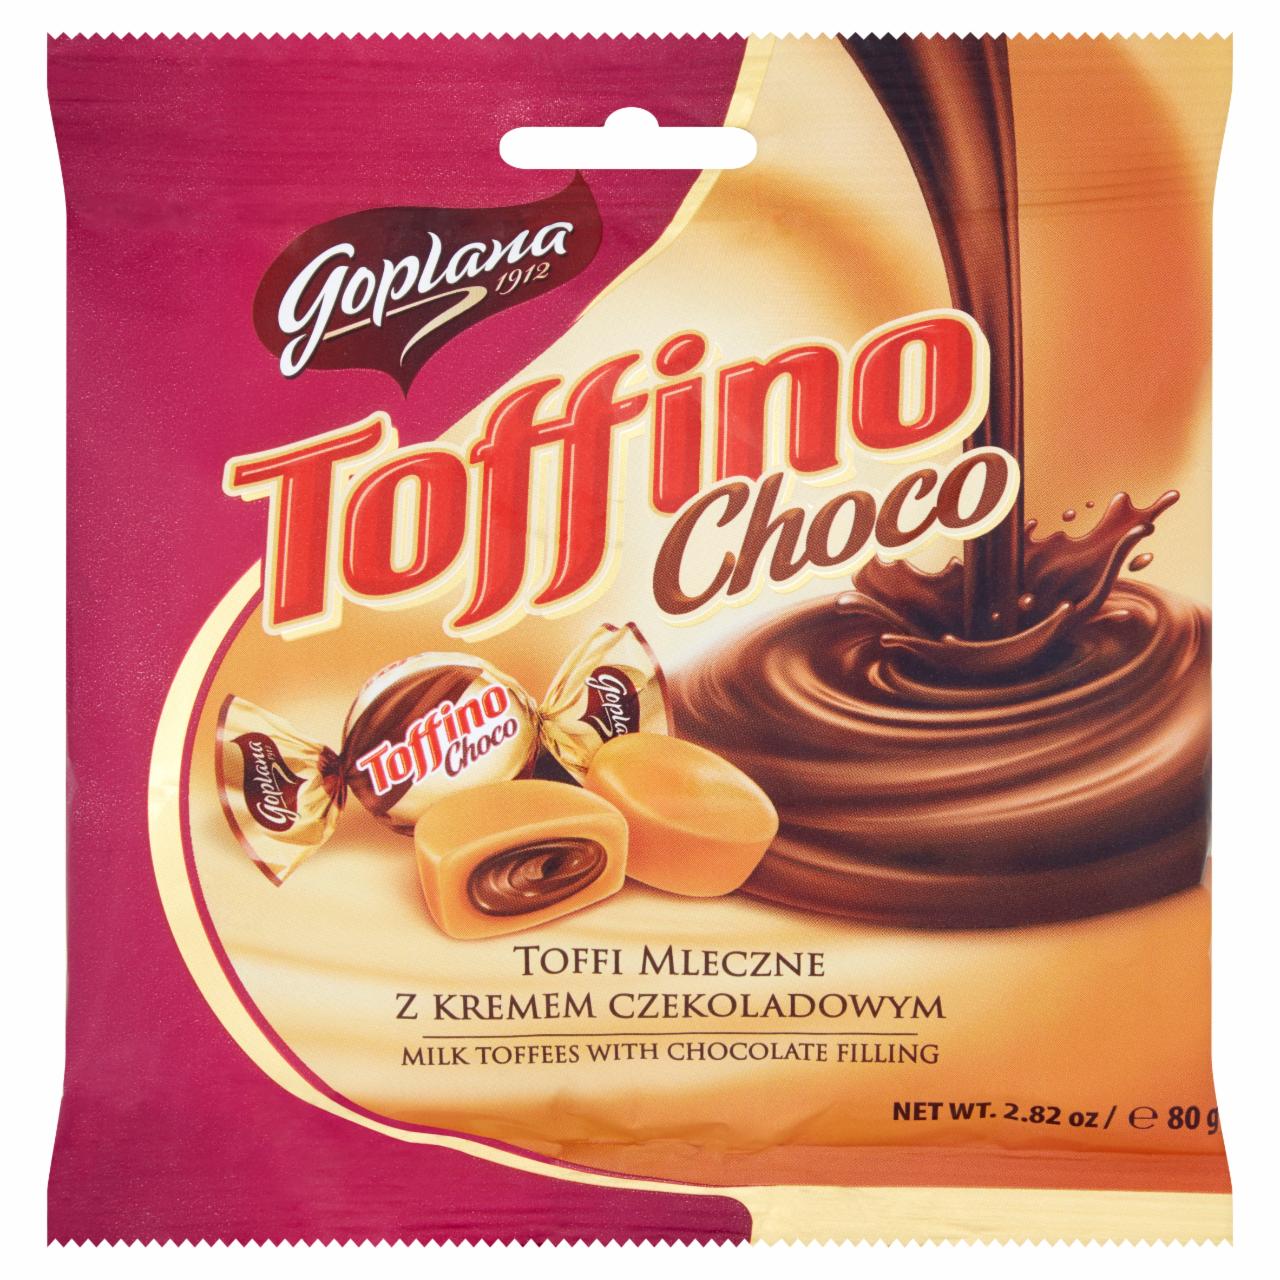 Képek - Choco karamella csokoládé krémmel töltve Toffino